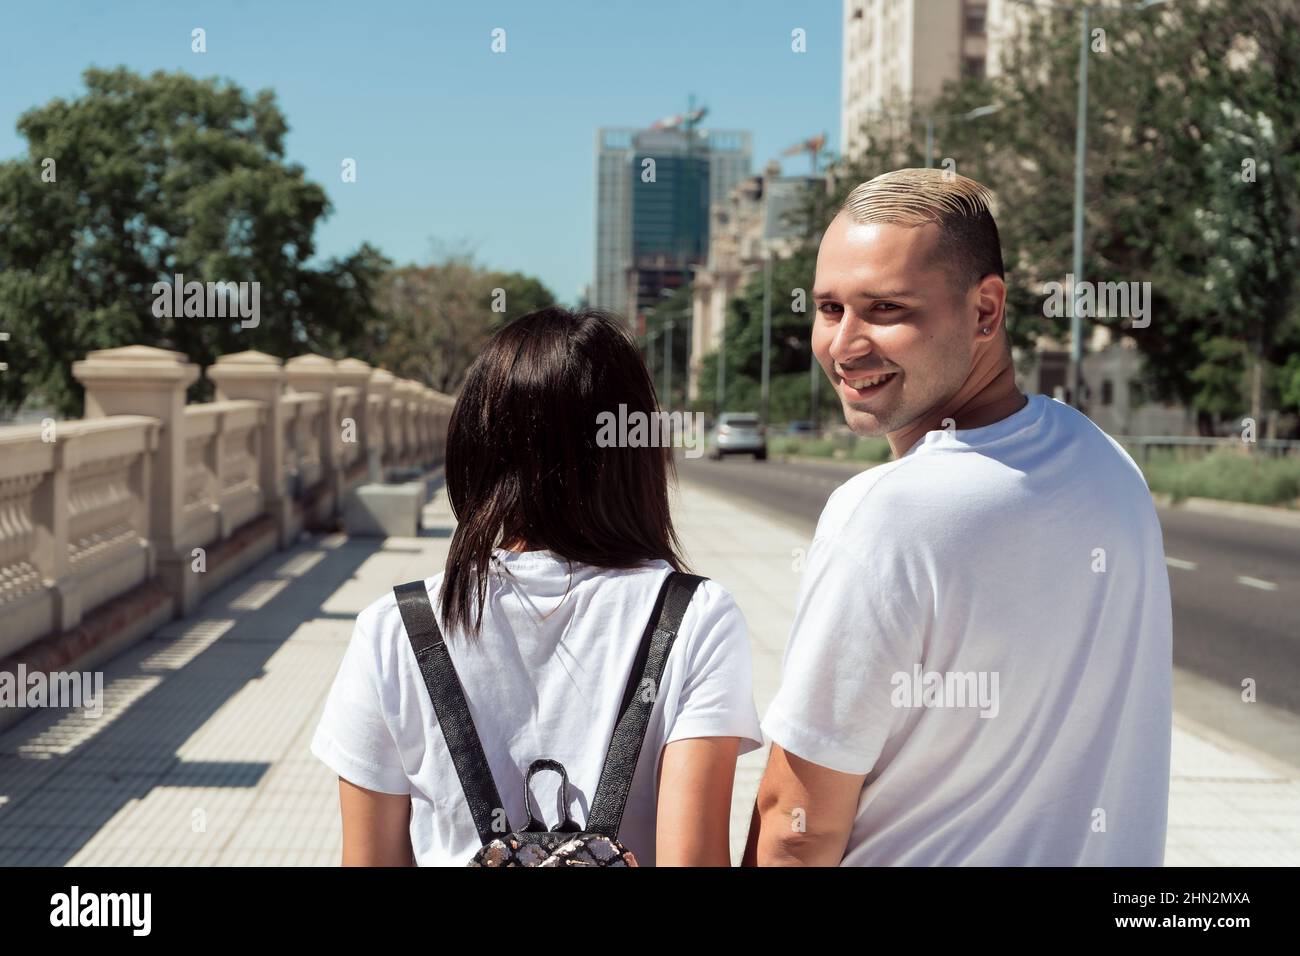 Un portrait d'un couple Latino marchant dans la rue et l'homme regardant en arrière souriant. Concept de bonheur, amour. Banque D'Images